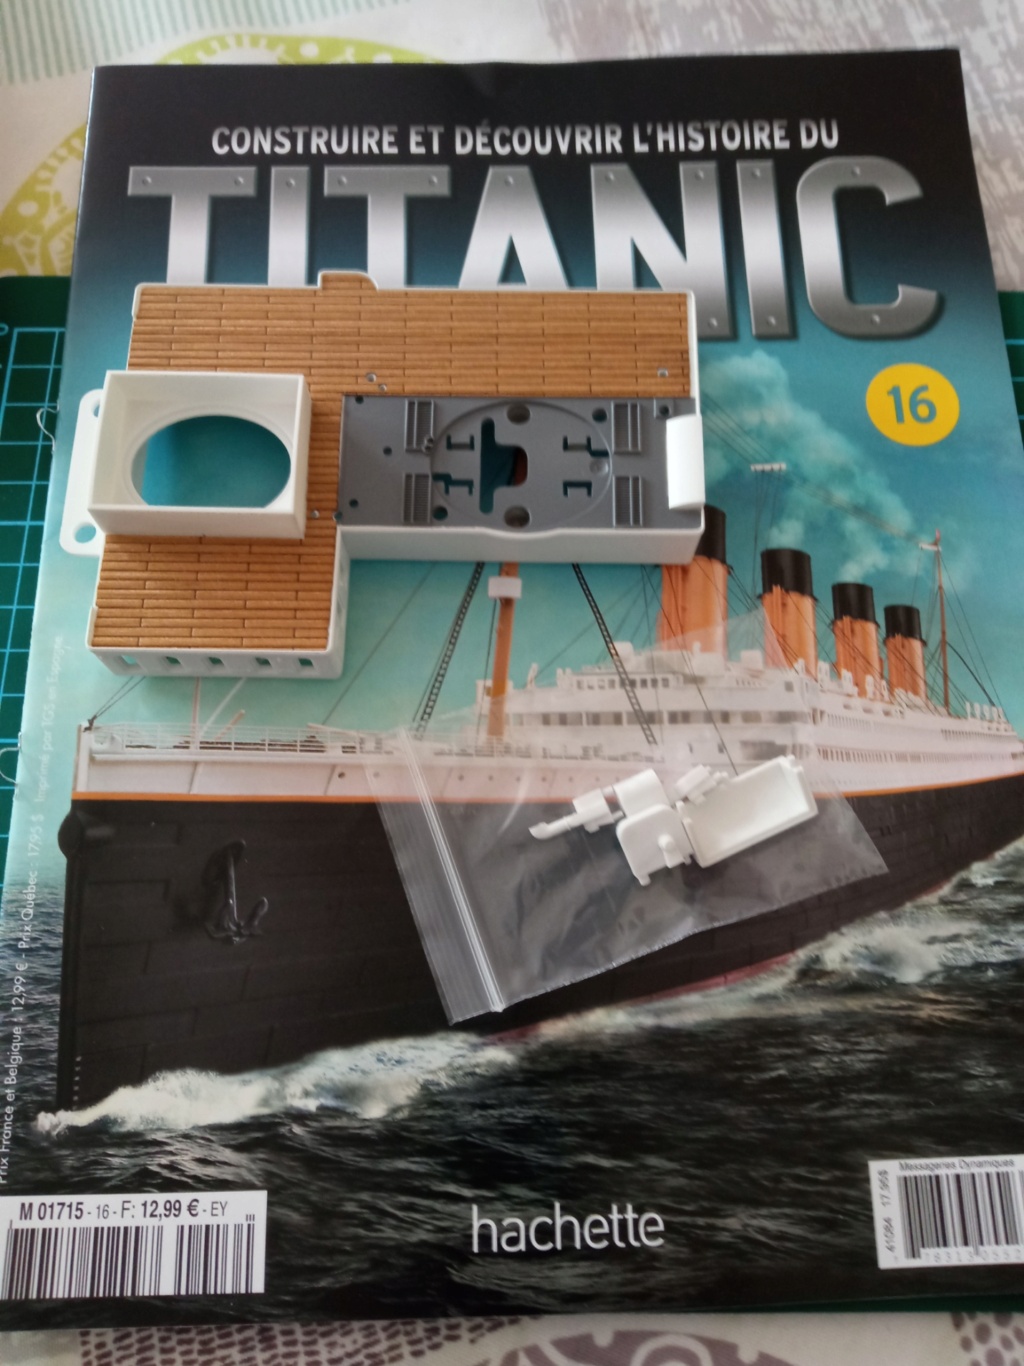 RMS Titanic [Hachette 1/200°] de clg78 - Page 5 16_110